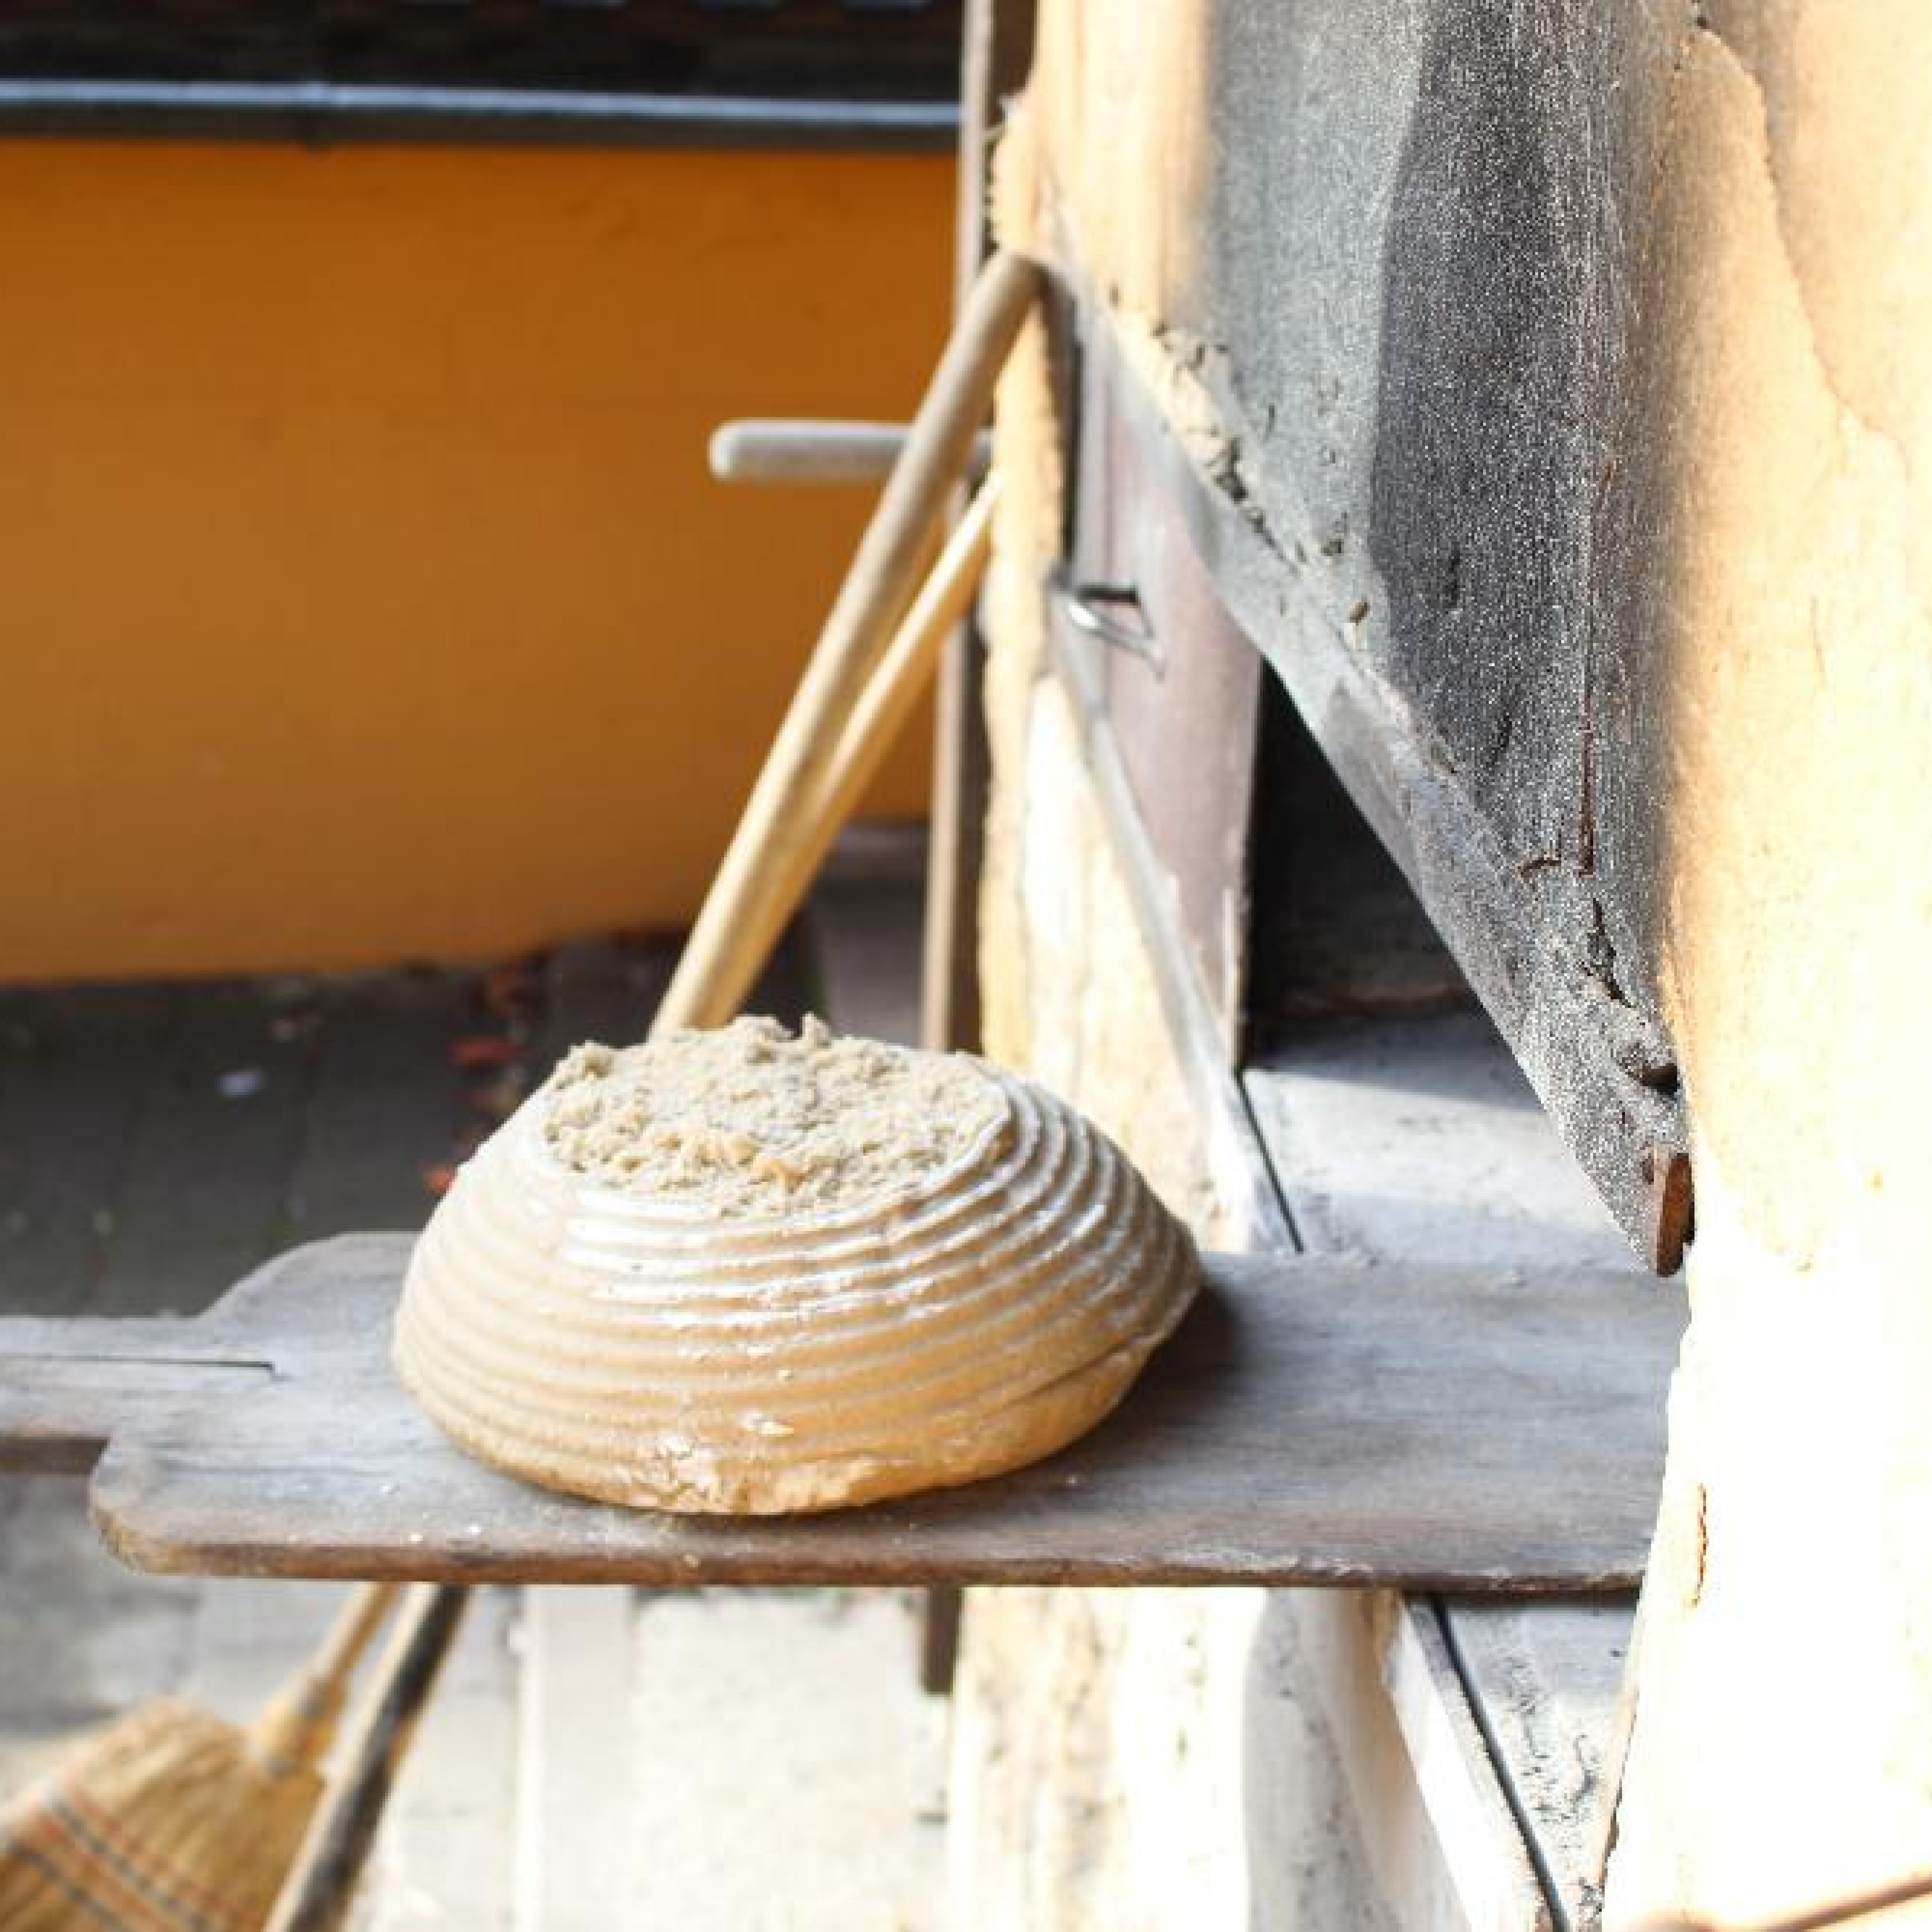 Bild eines frischgebackenen Brotes, das aus dem Holzbackofen geholt wird